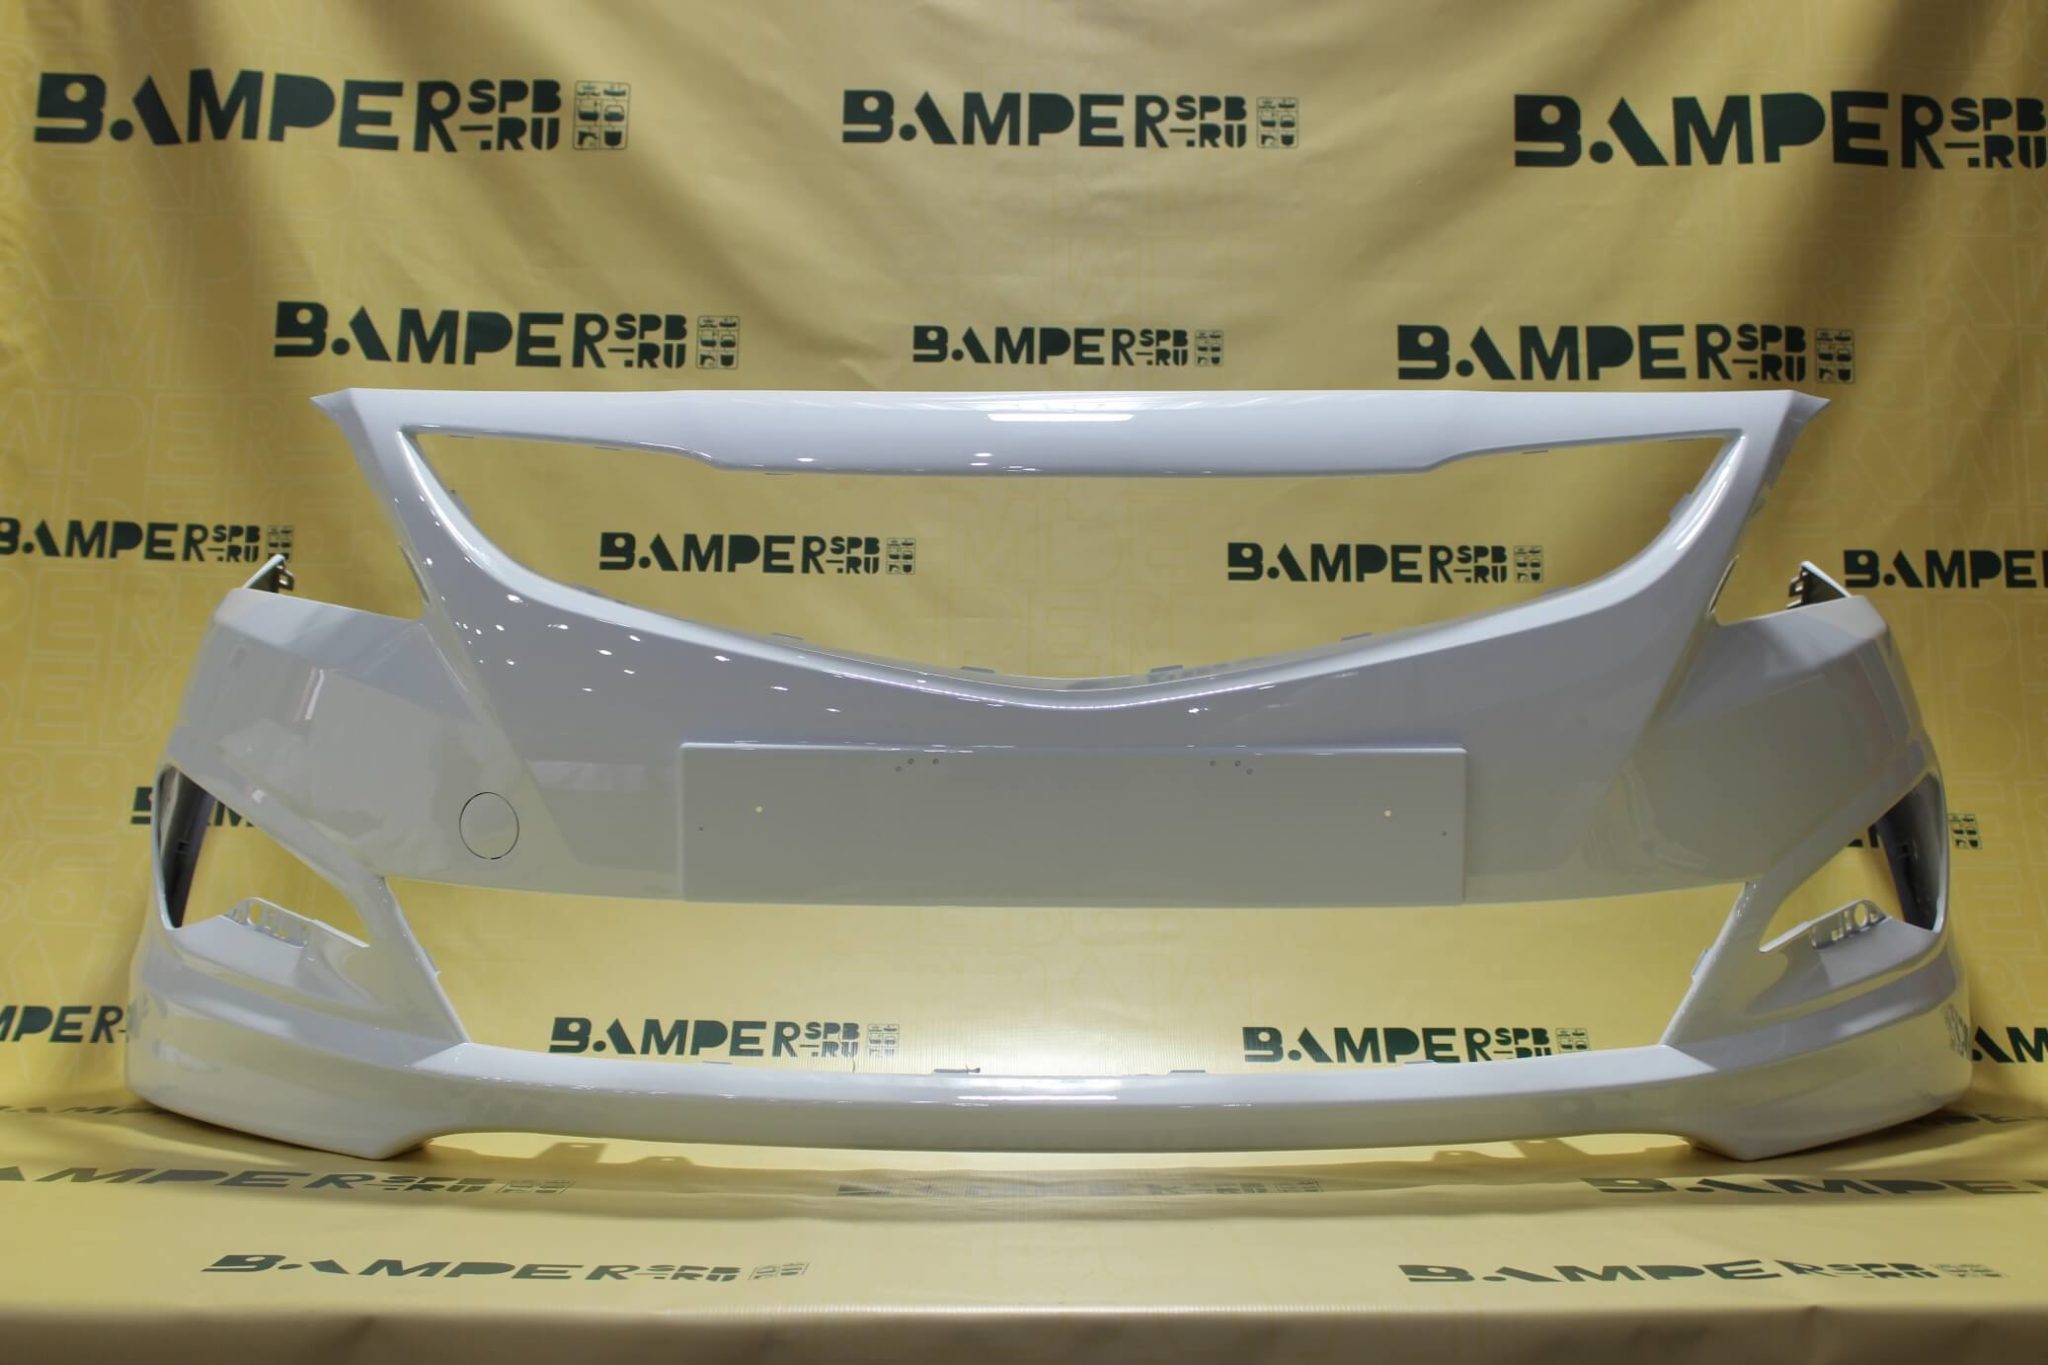 Бампер хендай солярис 2015 год. Бампер передний Хундай avg 3153903 белый. 8190452 Metaco бампер передний. Бампер Солярис передний. Бампер задний цвет SAE Solaris 2015г.